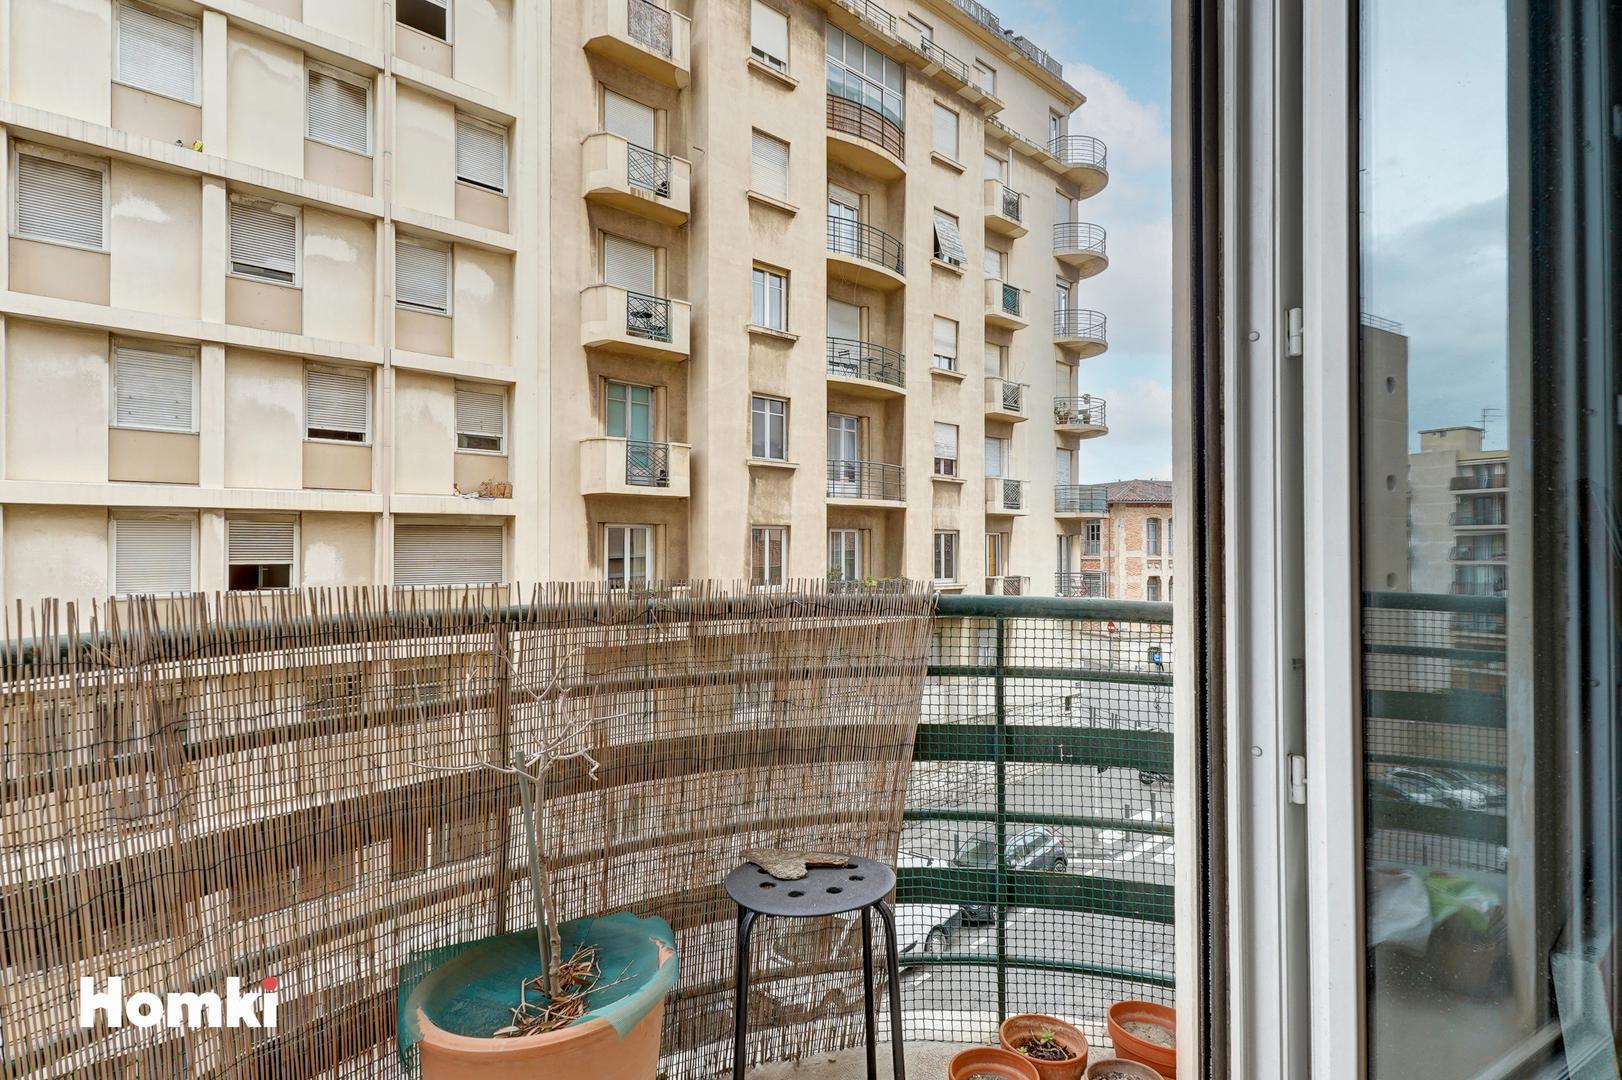 Homki - Vente Appartement  de 78.0 m² à Marseille 13003